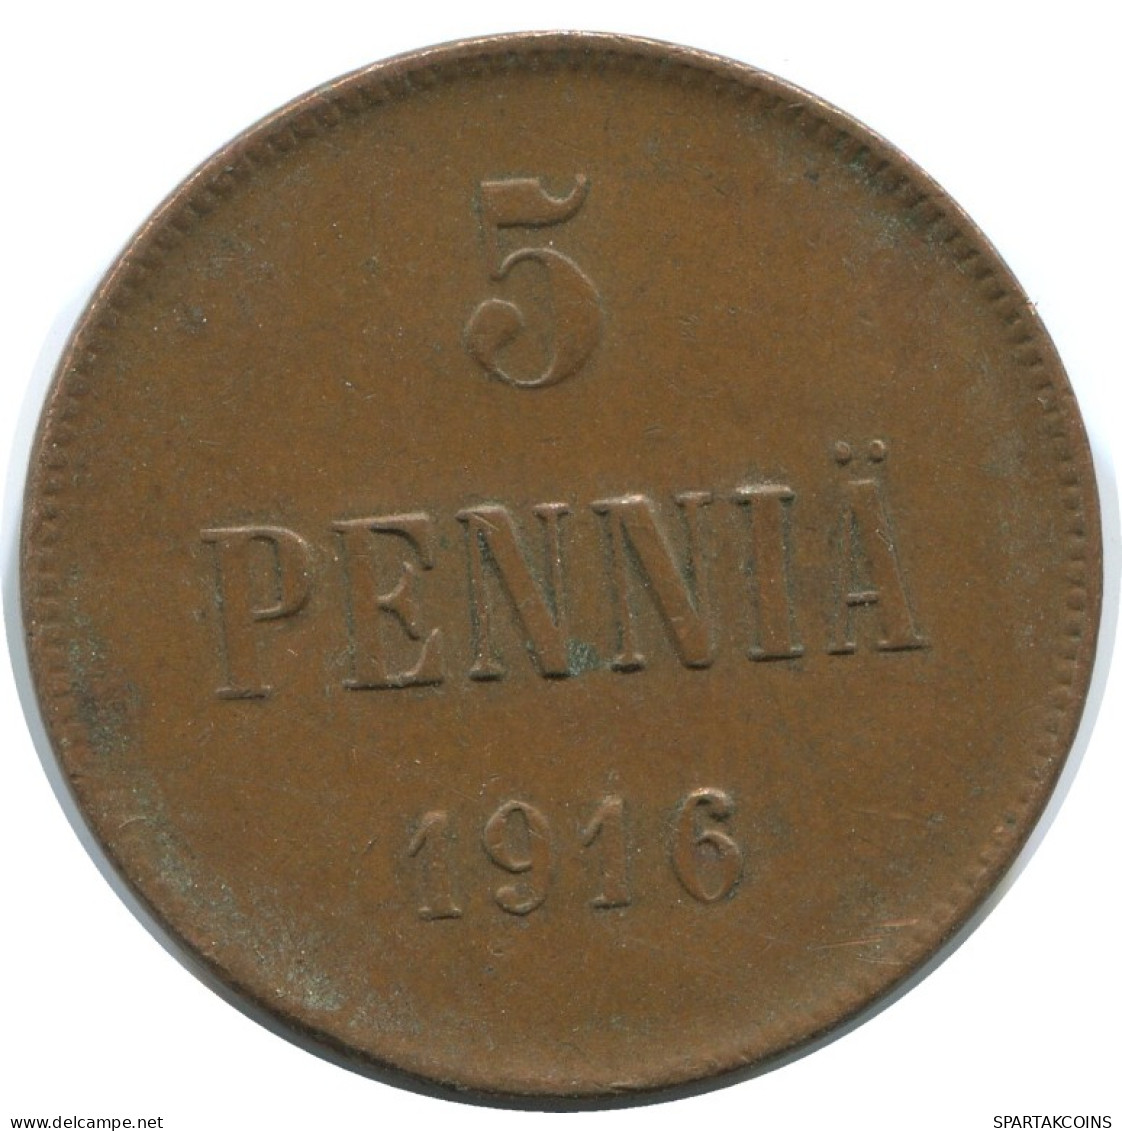 5 PENNIA 1916 FINLAND Coin RUSSIA EMPIRE #AB237.5.U.A - Finlande